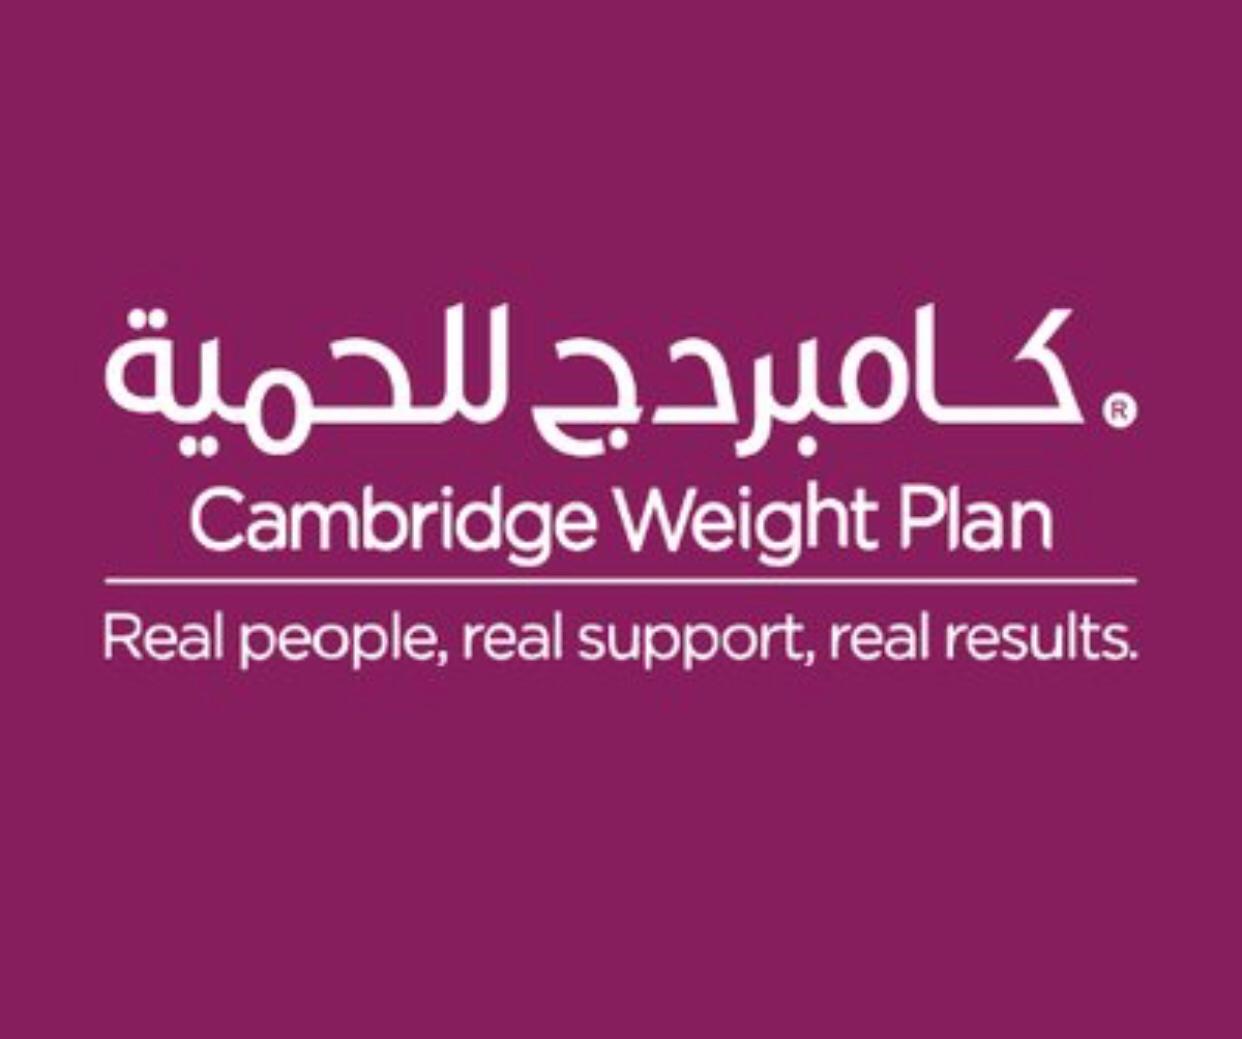 متجر كامبردج للحمية (المنامة) - Cambridge Weight Plan (Manamah)